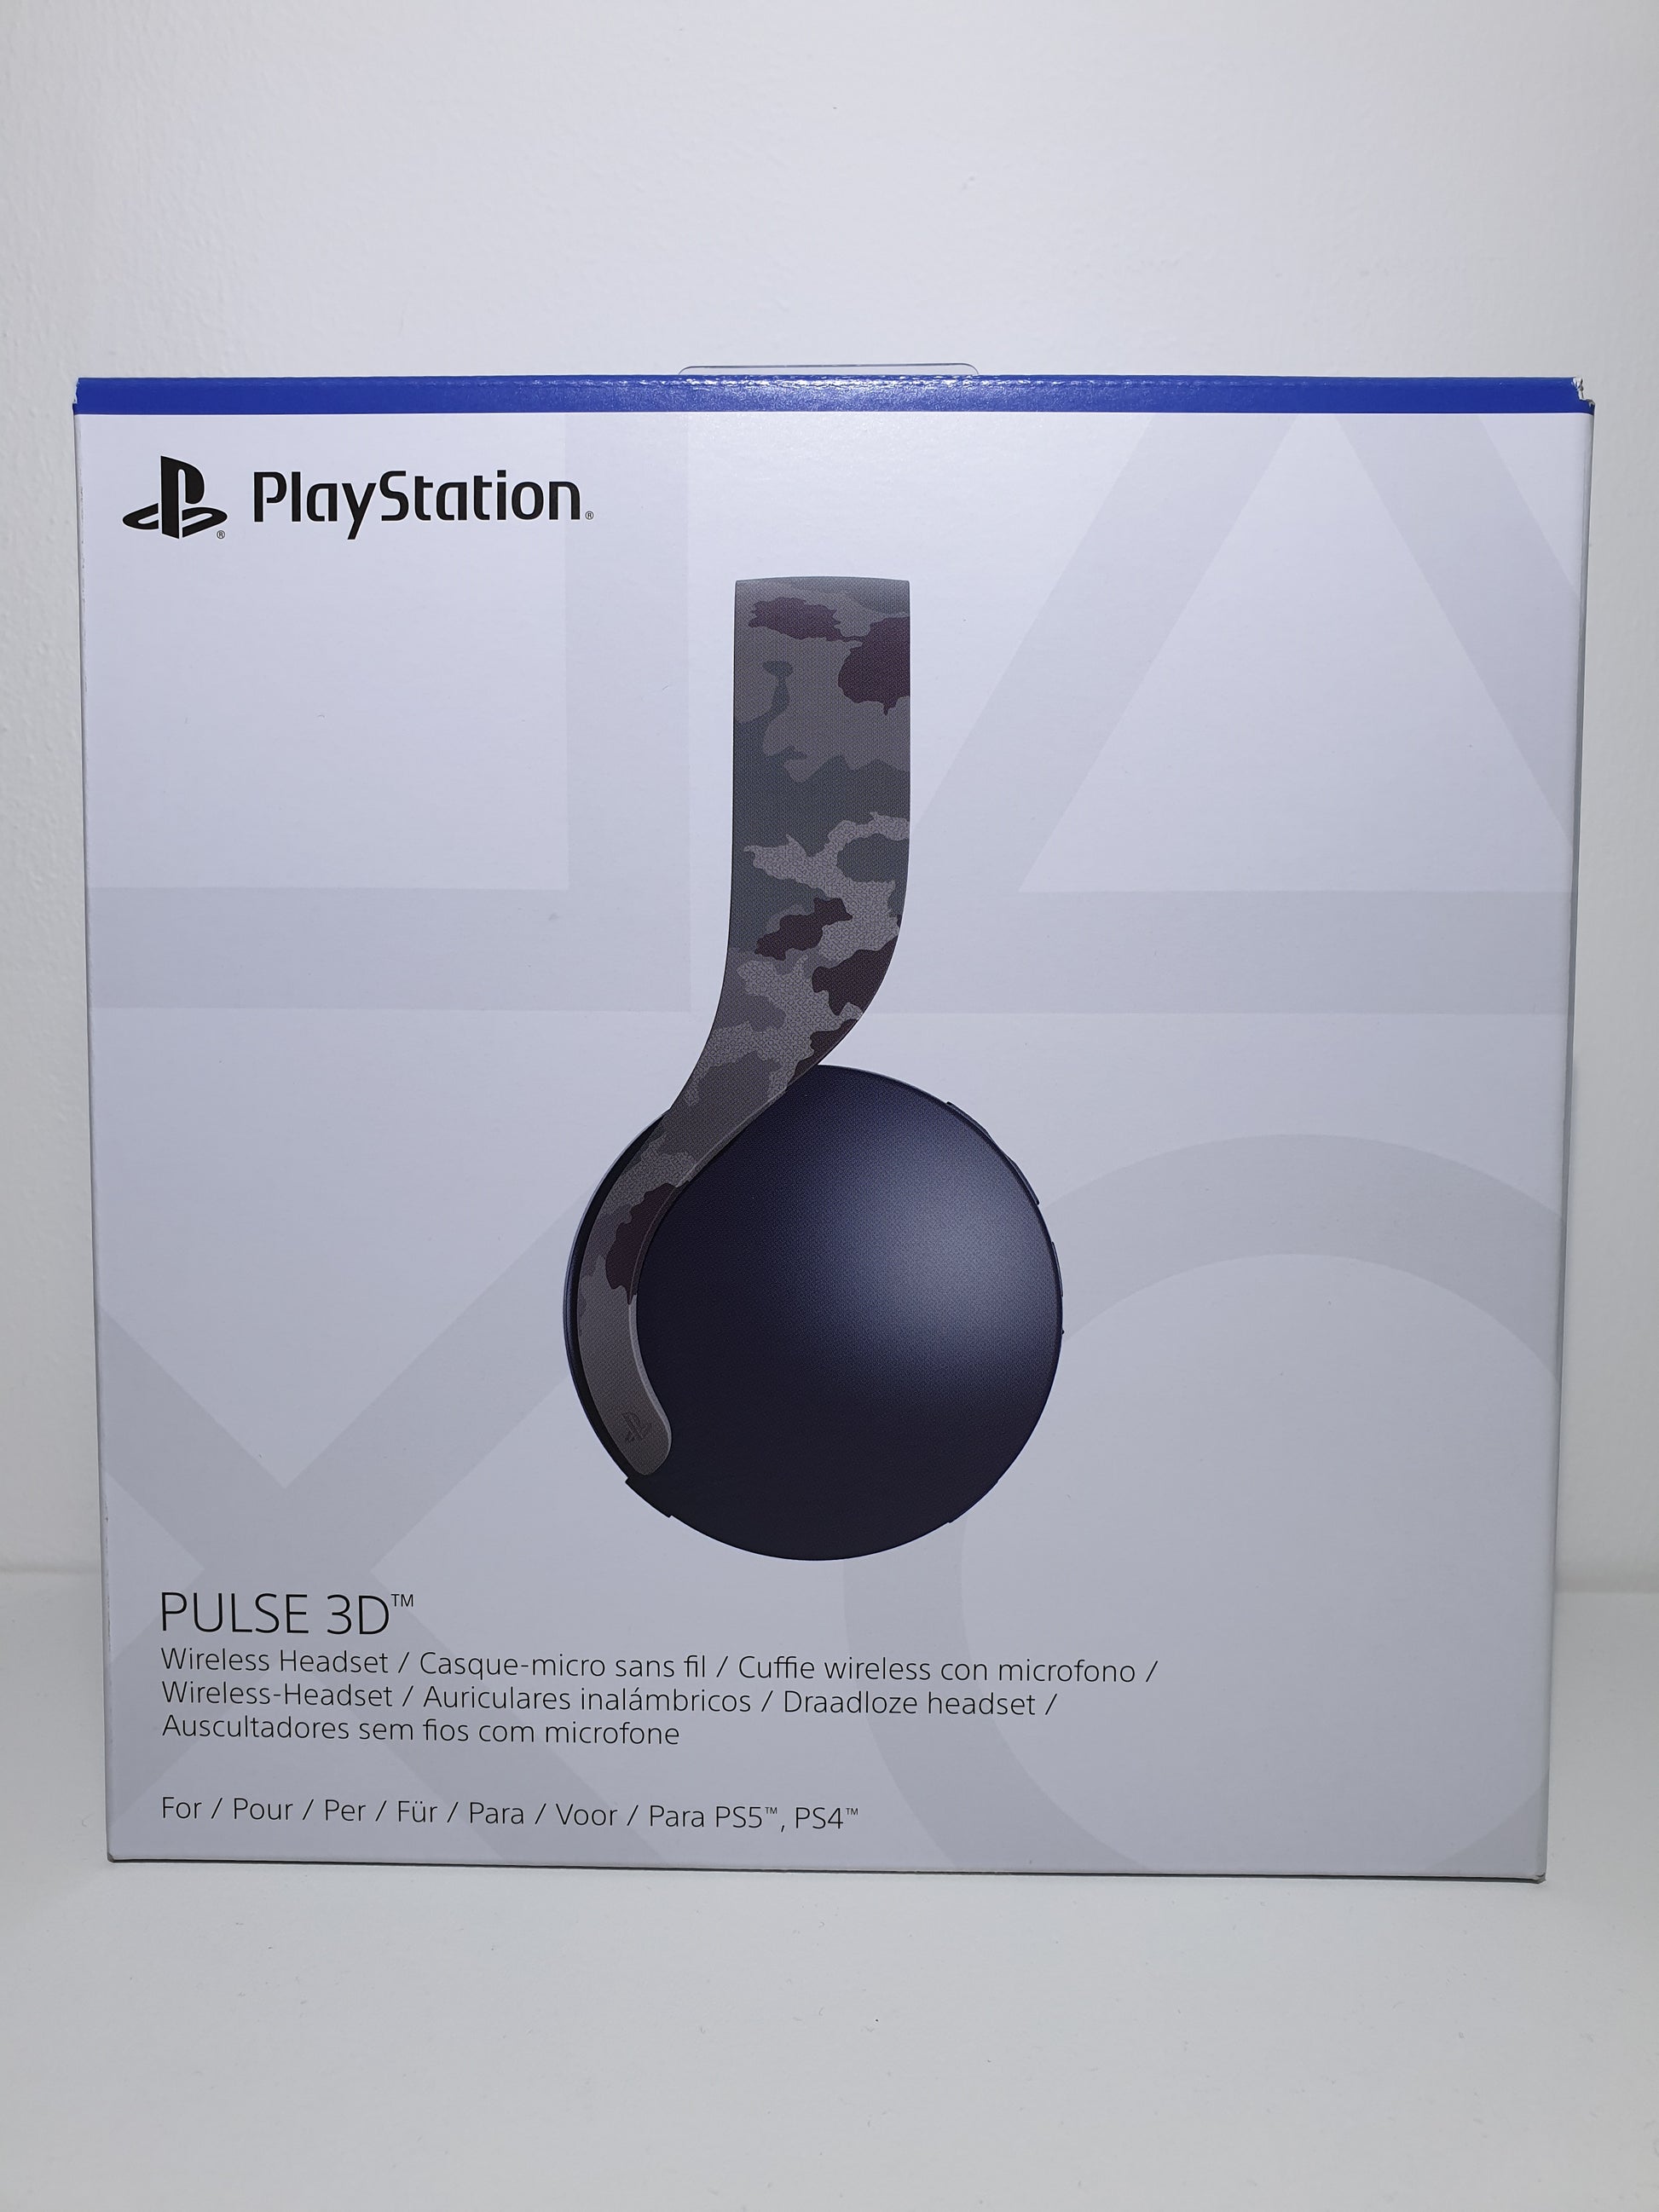 Casque audio micro sans fil PULSE 3D™ – Grey Camouflage - Pour PS5